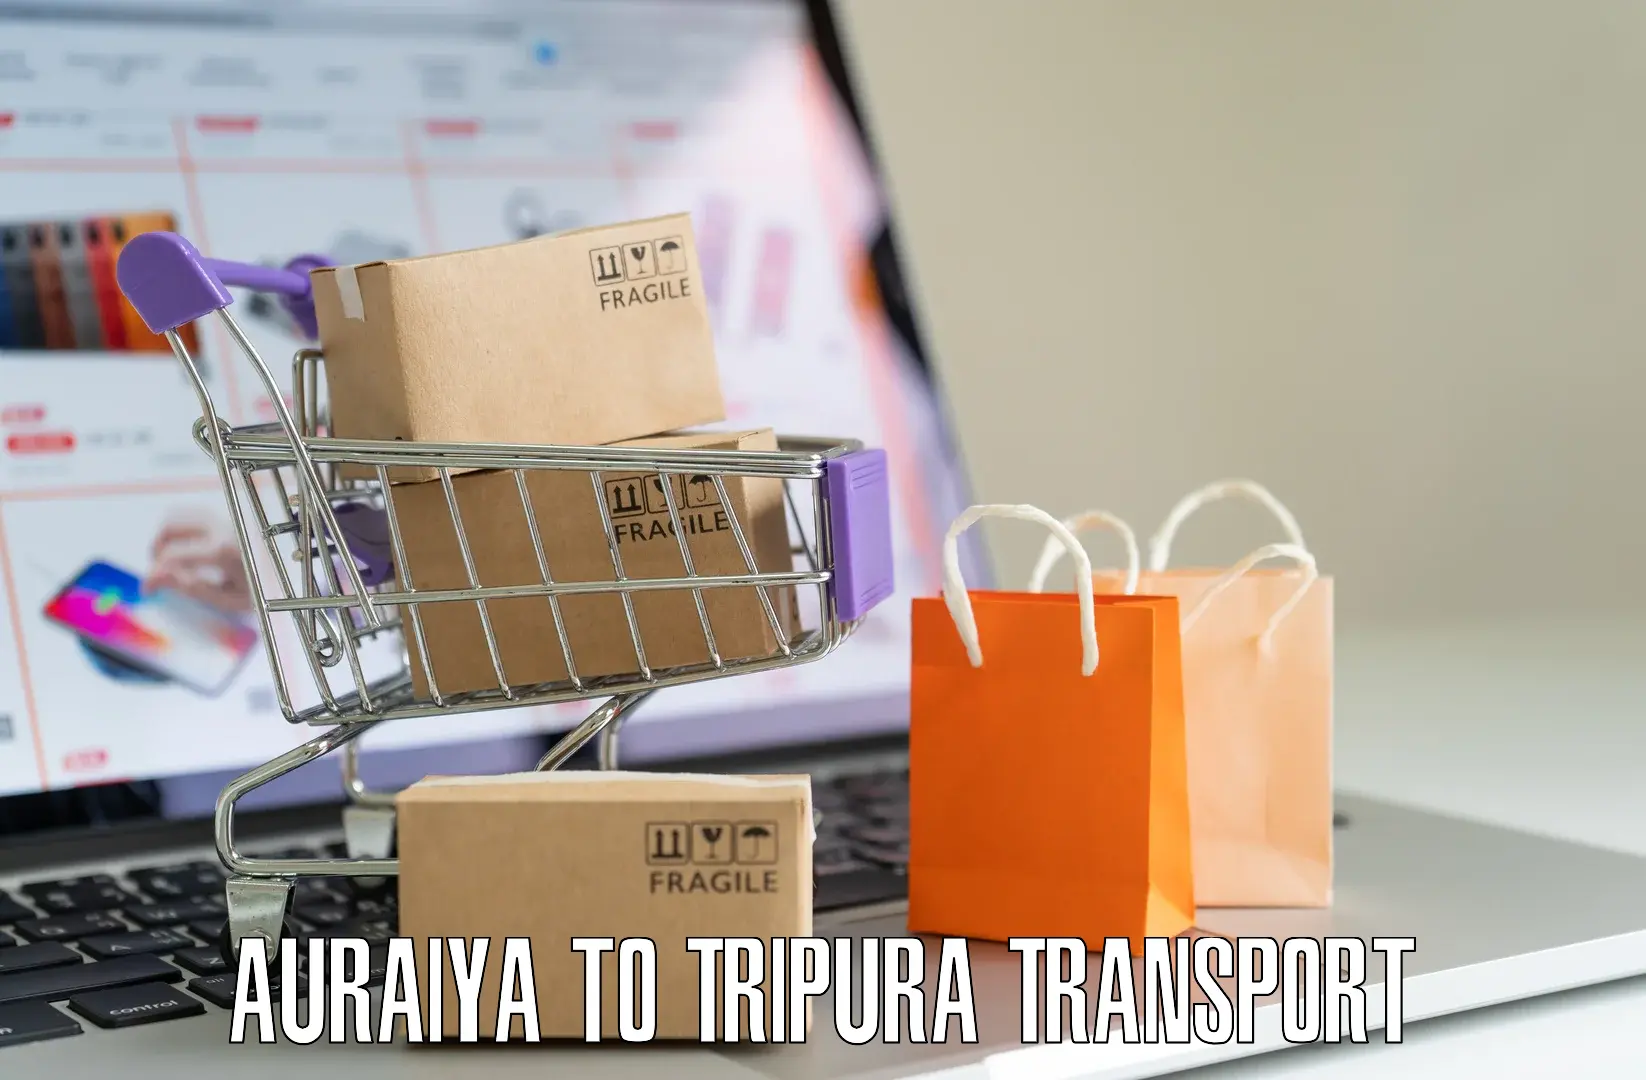 Online transport Auraiya to Agartala